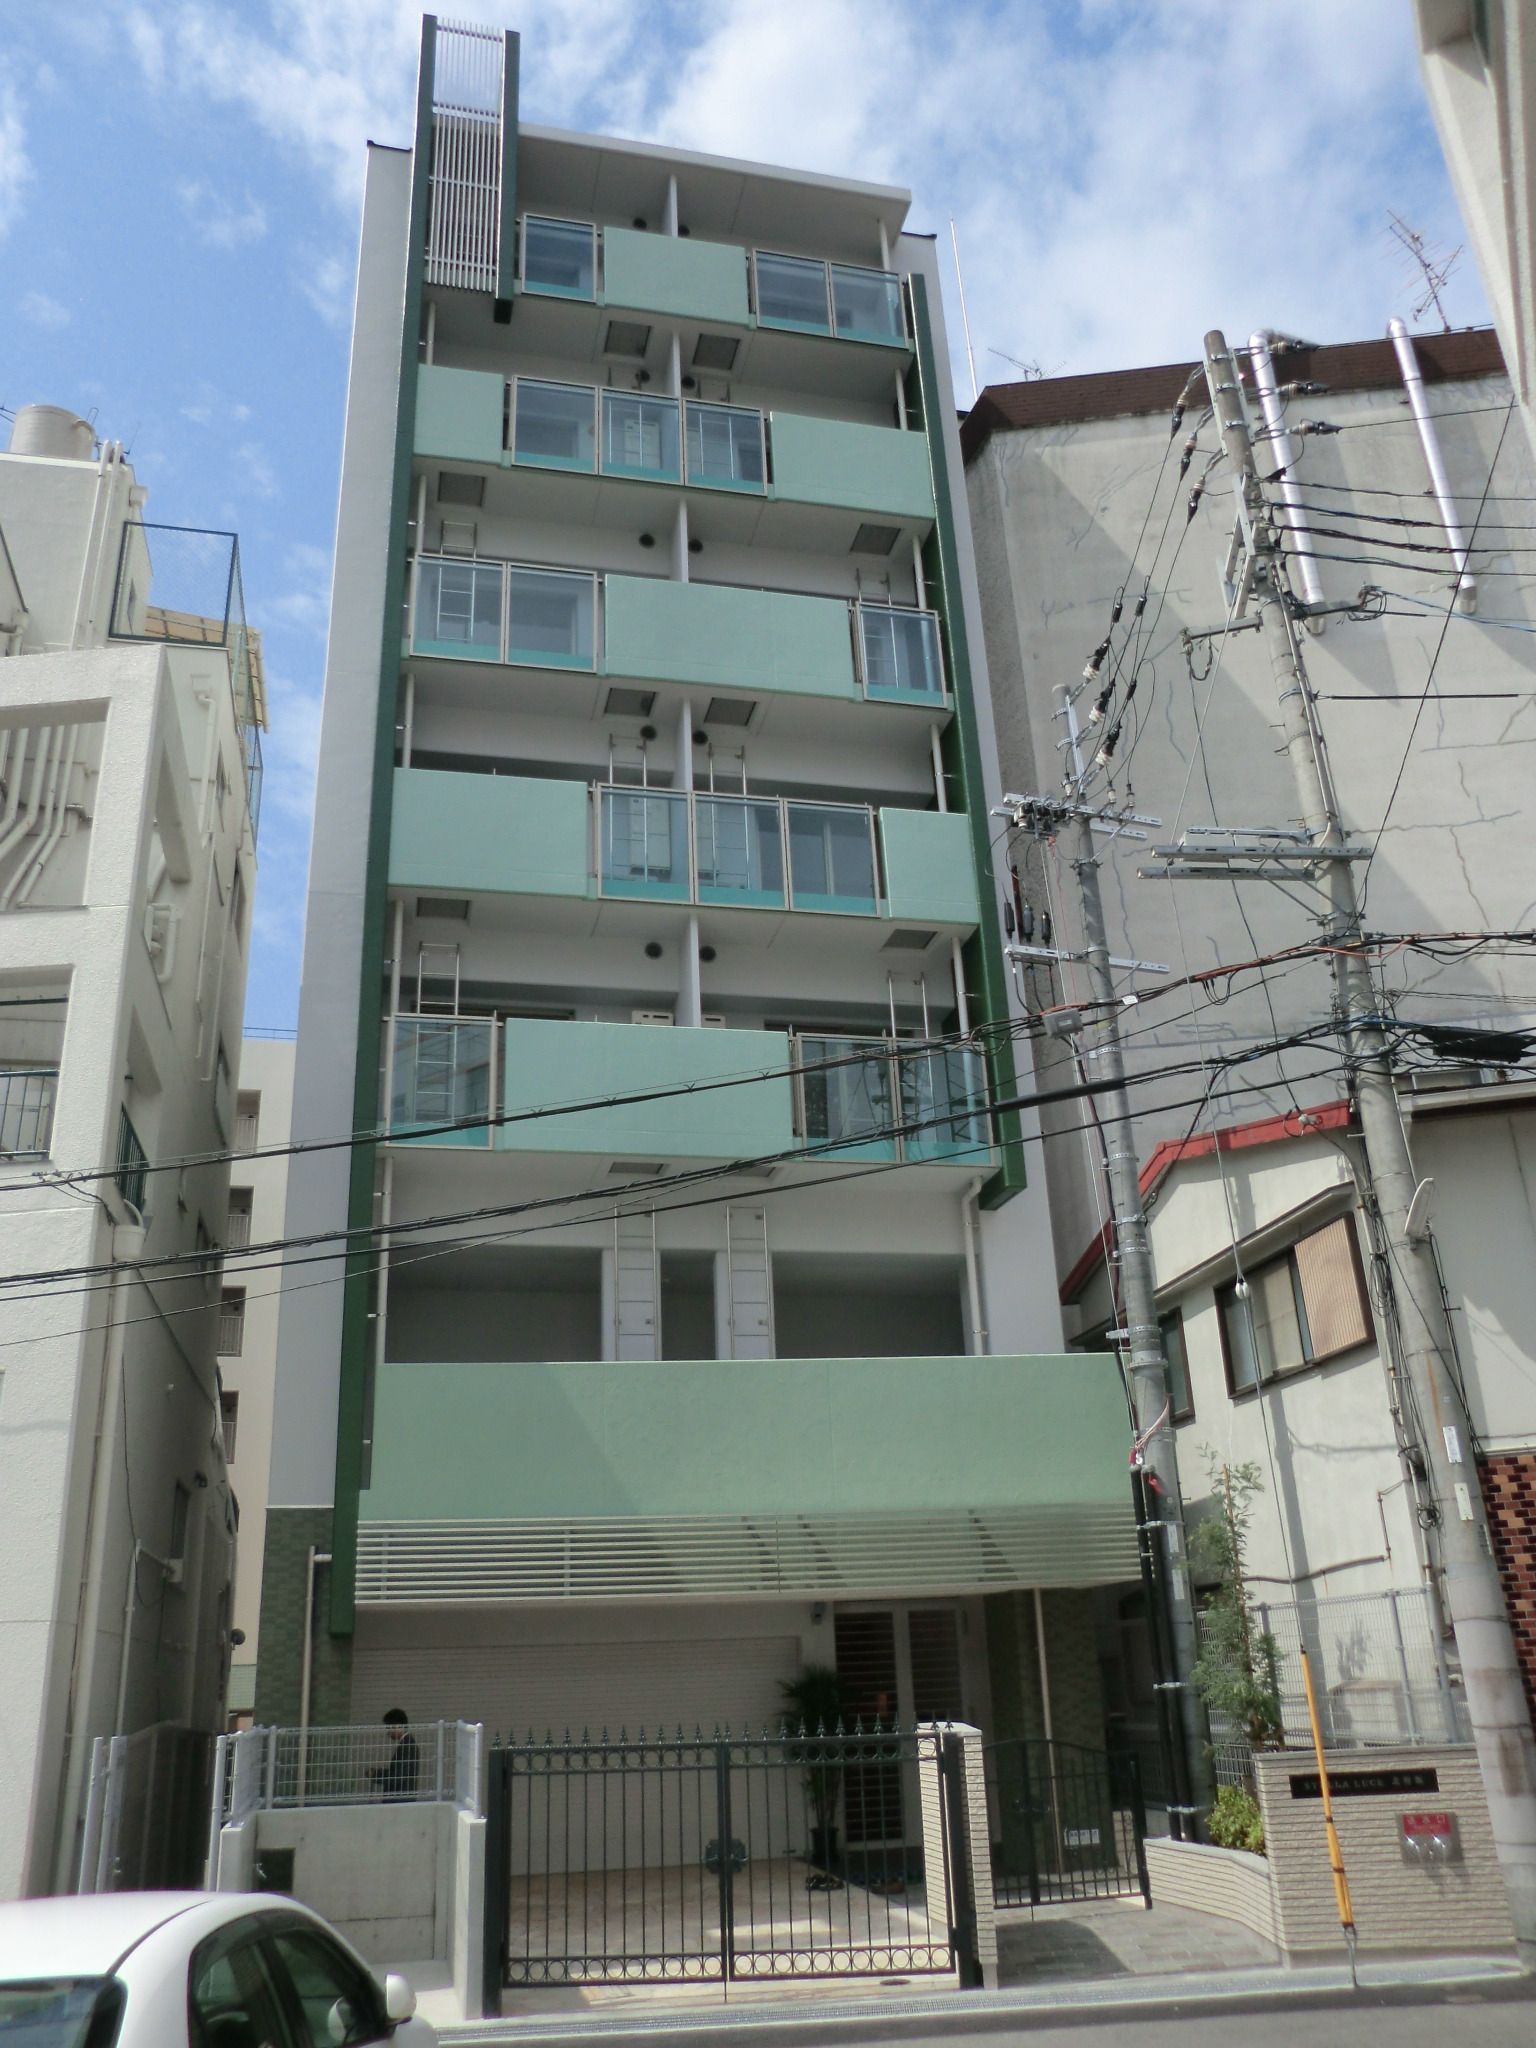 有限会社ユーコム管理物件一覧 神戸市の学生向け シングル賃貸マンションなら創業19年のユーコムへ